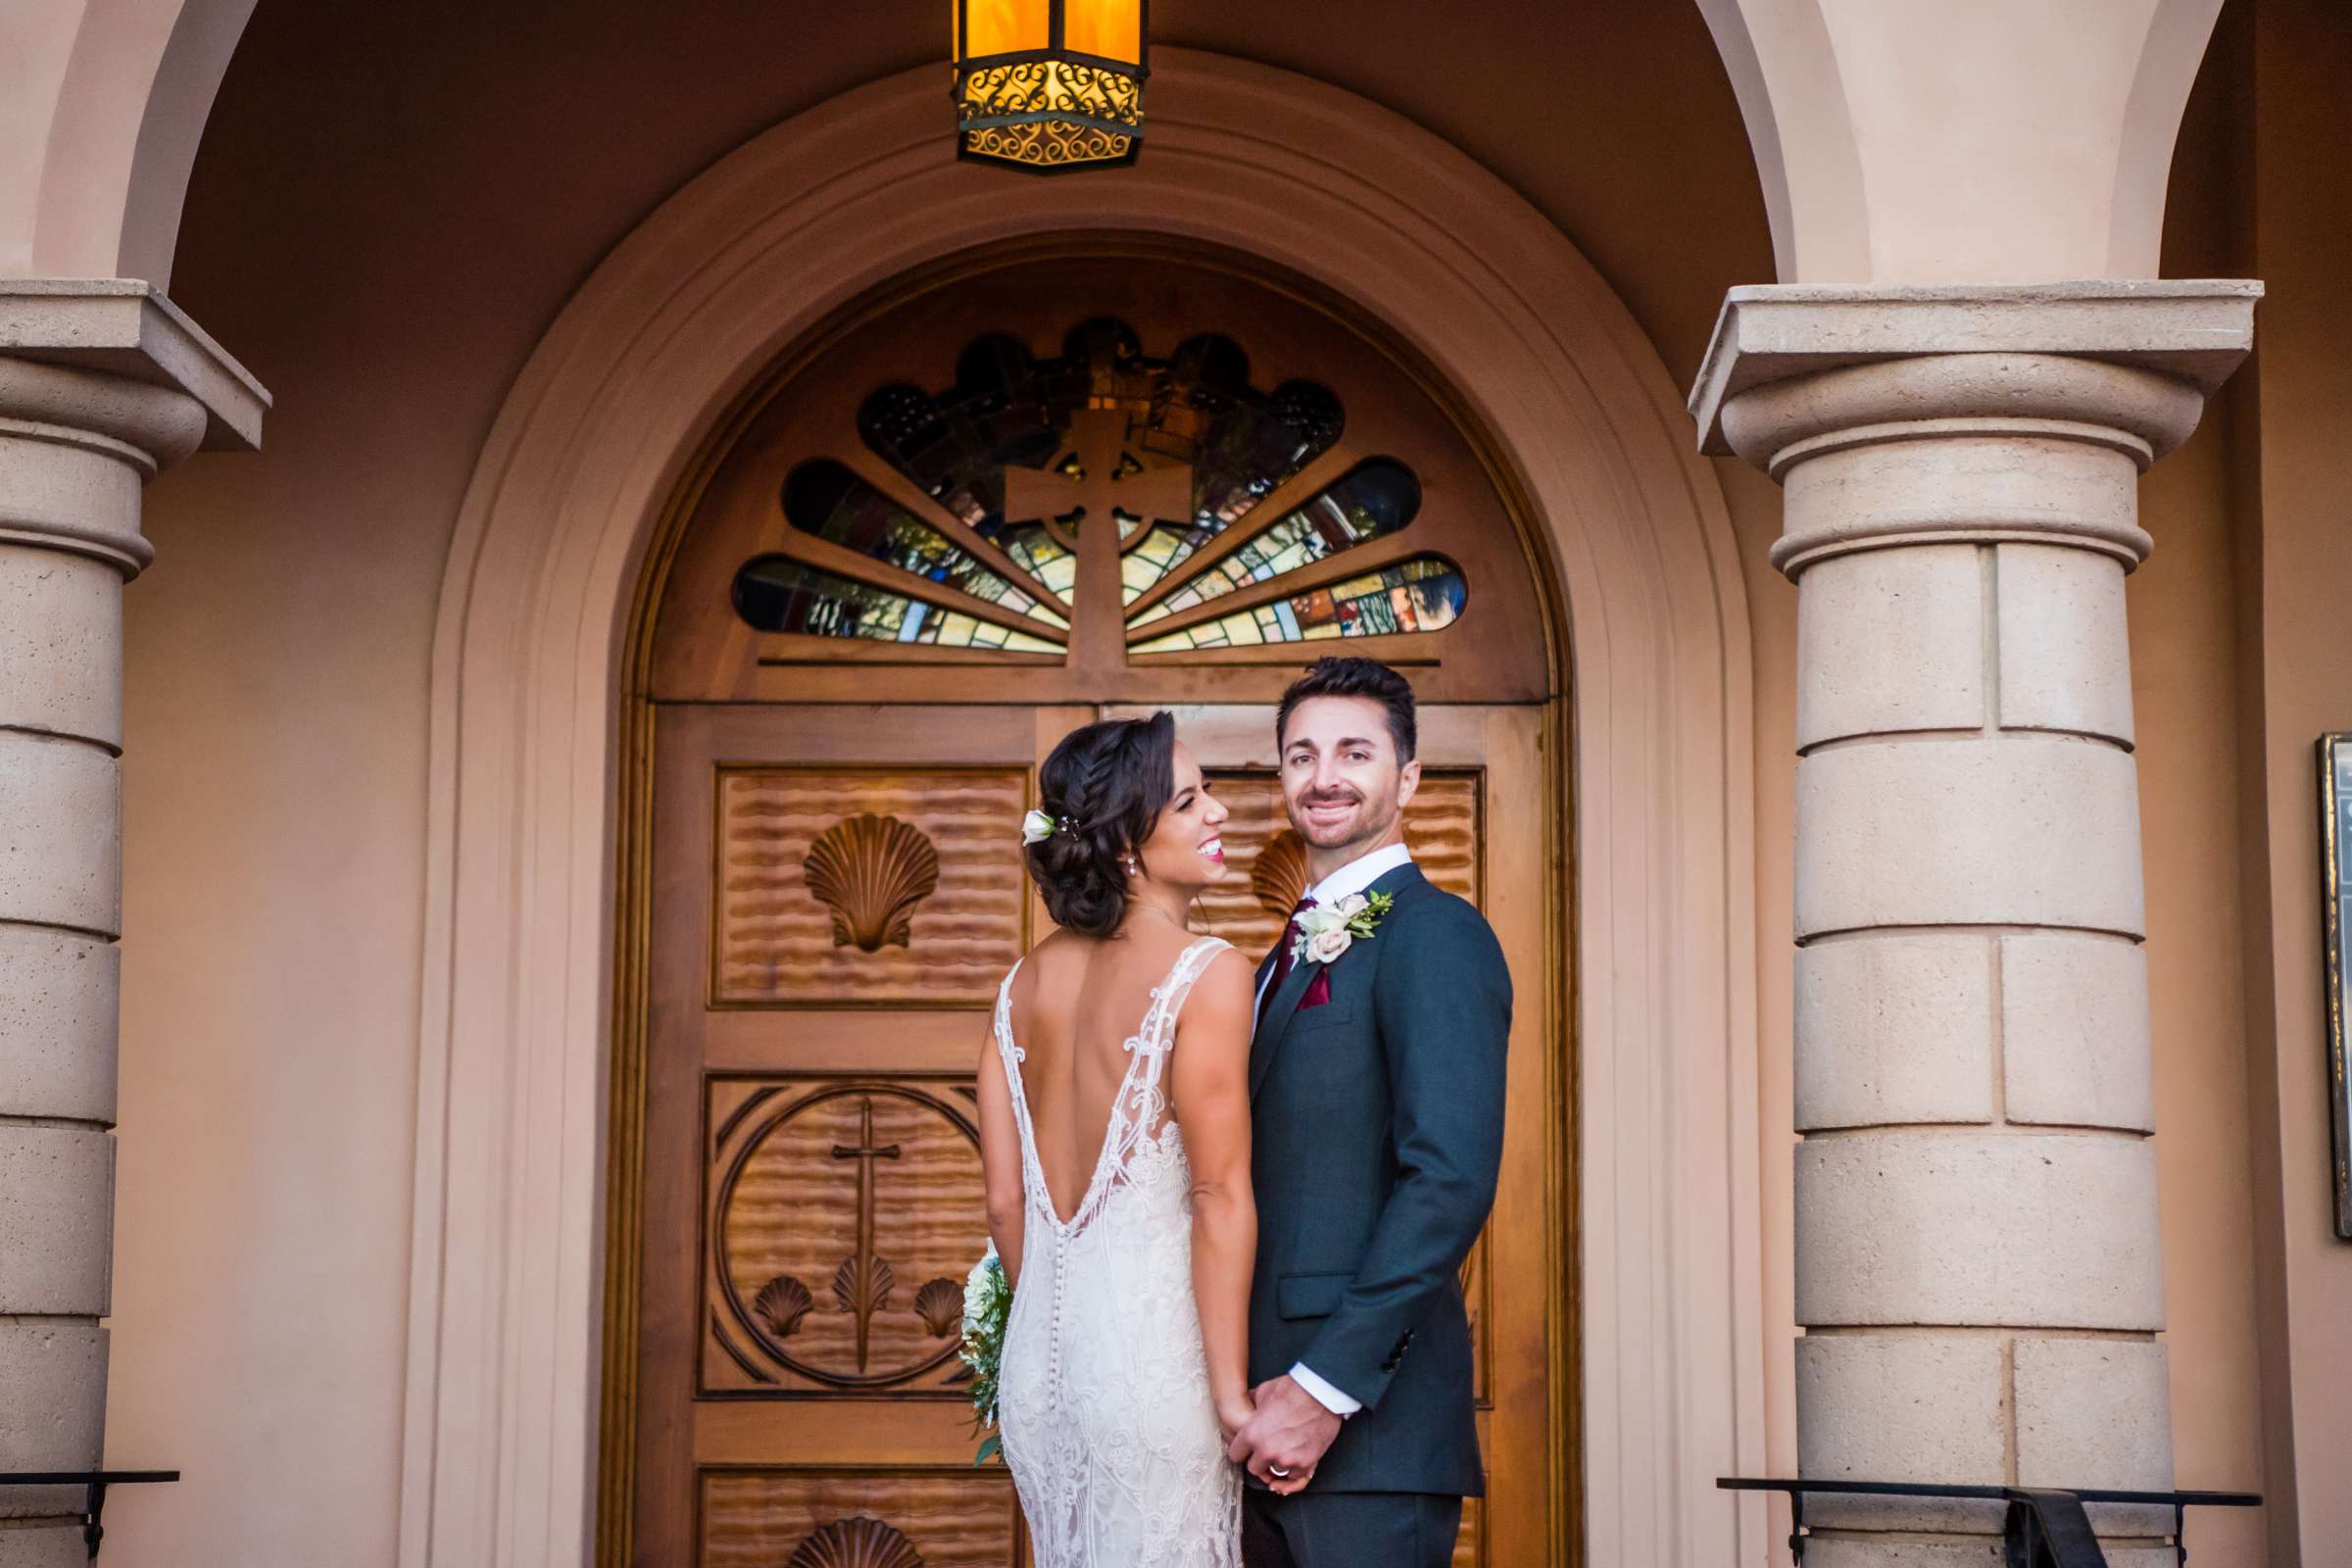 Cuvier Club Wedding, Sydney and Bryan Wedding Photo #3 by True Photography